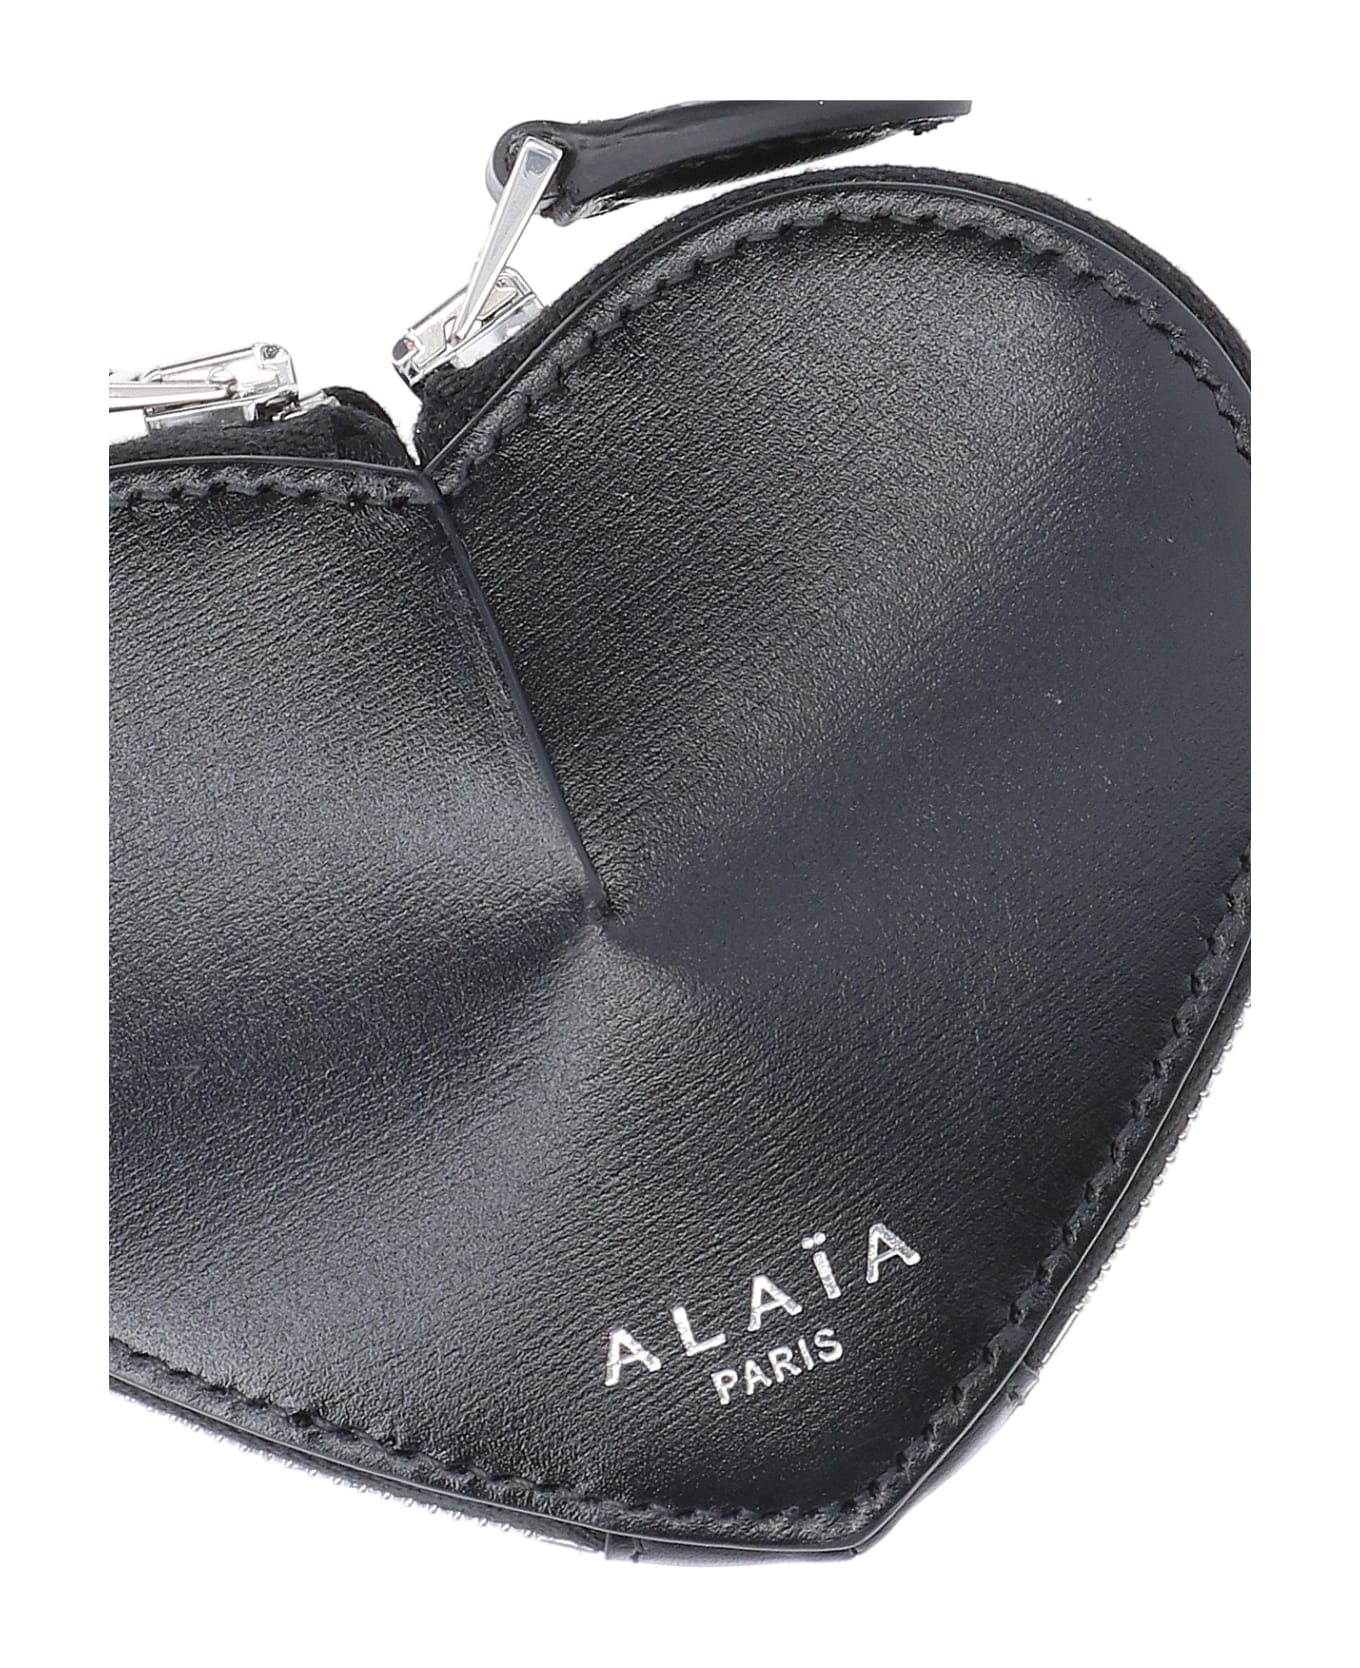 CLN - An elegant understatement. Shop the Alaia wallet